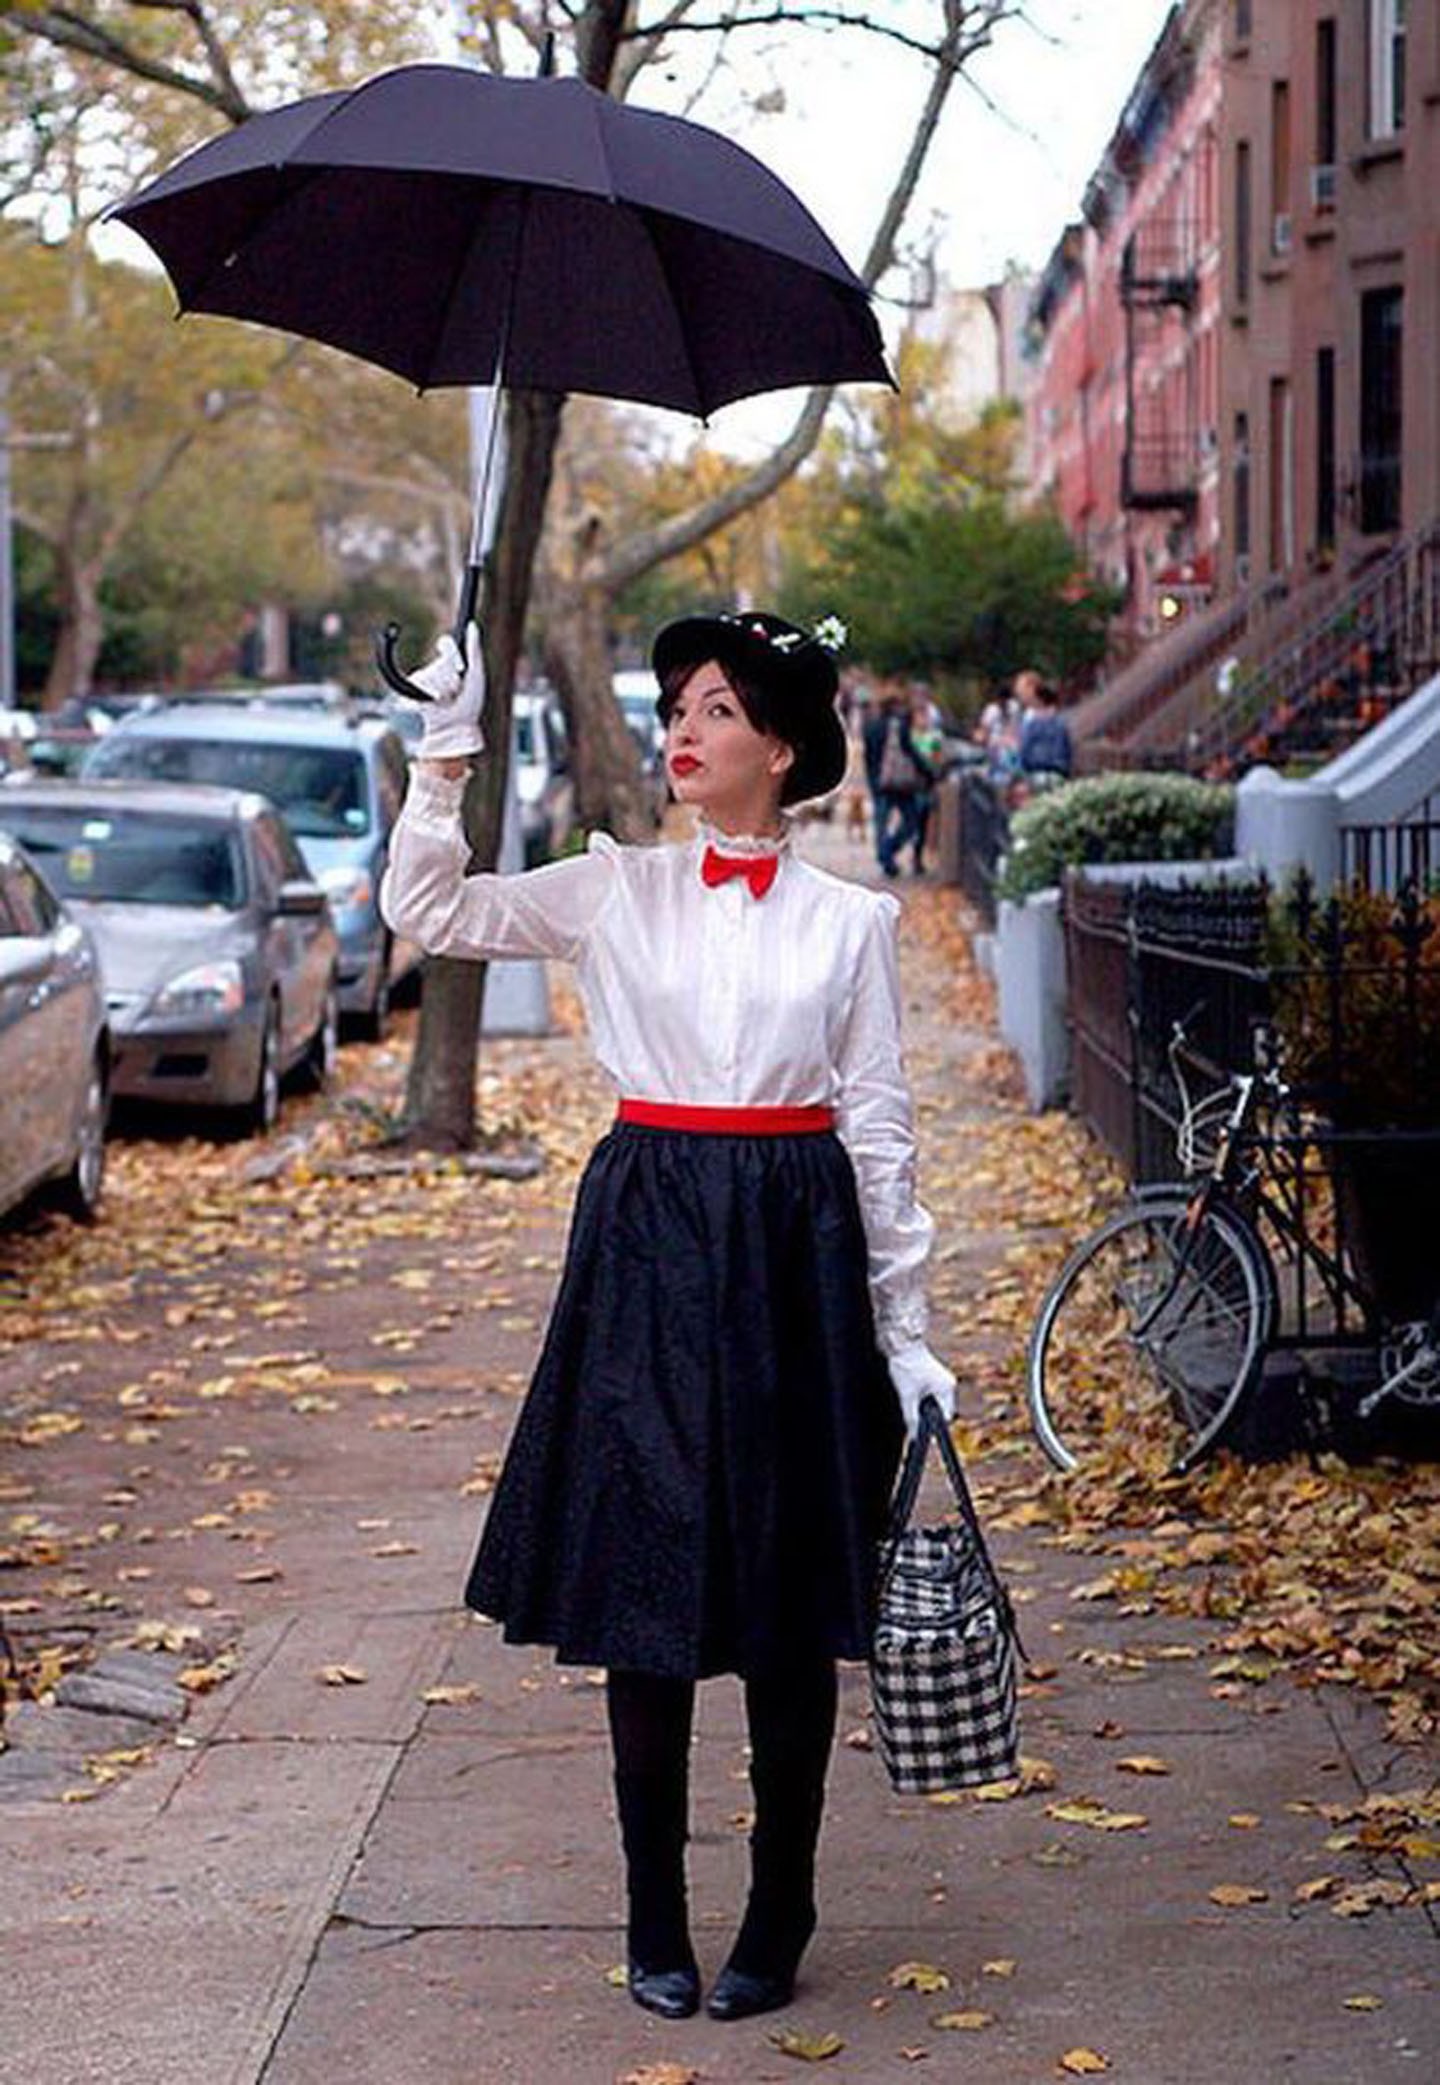 Fantasias De Halloween Ideias Do Pinterest Que V O Fazer Sucesso Em Casa Vogue